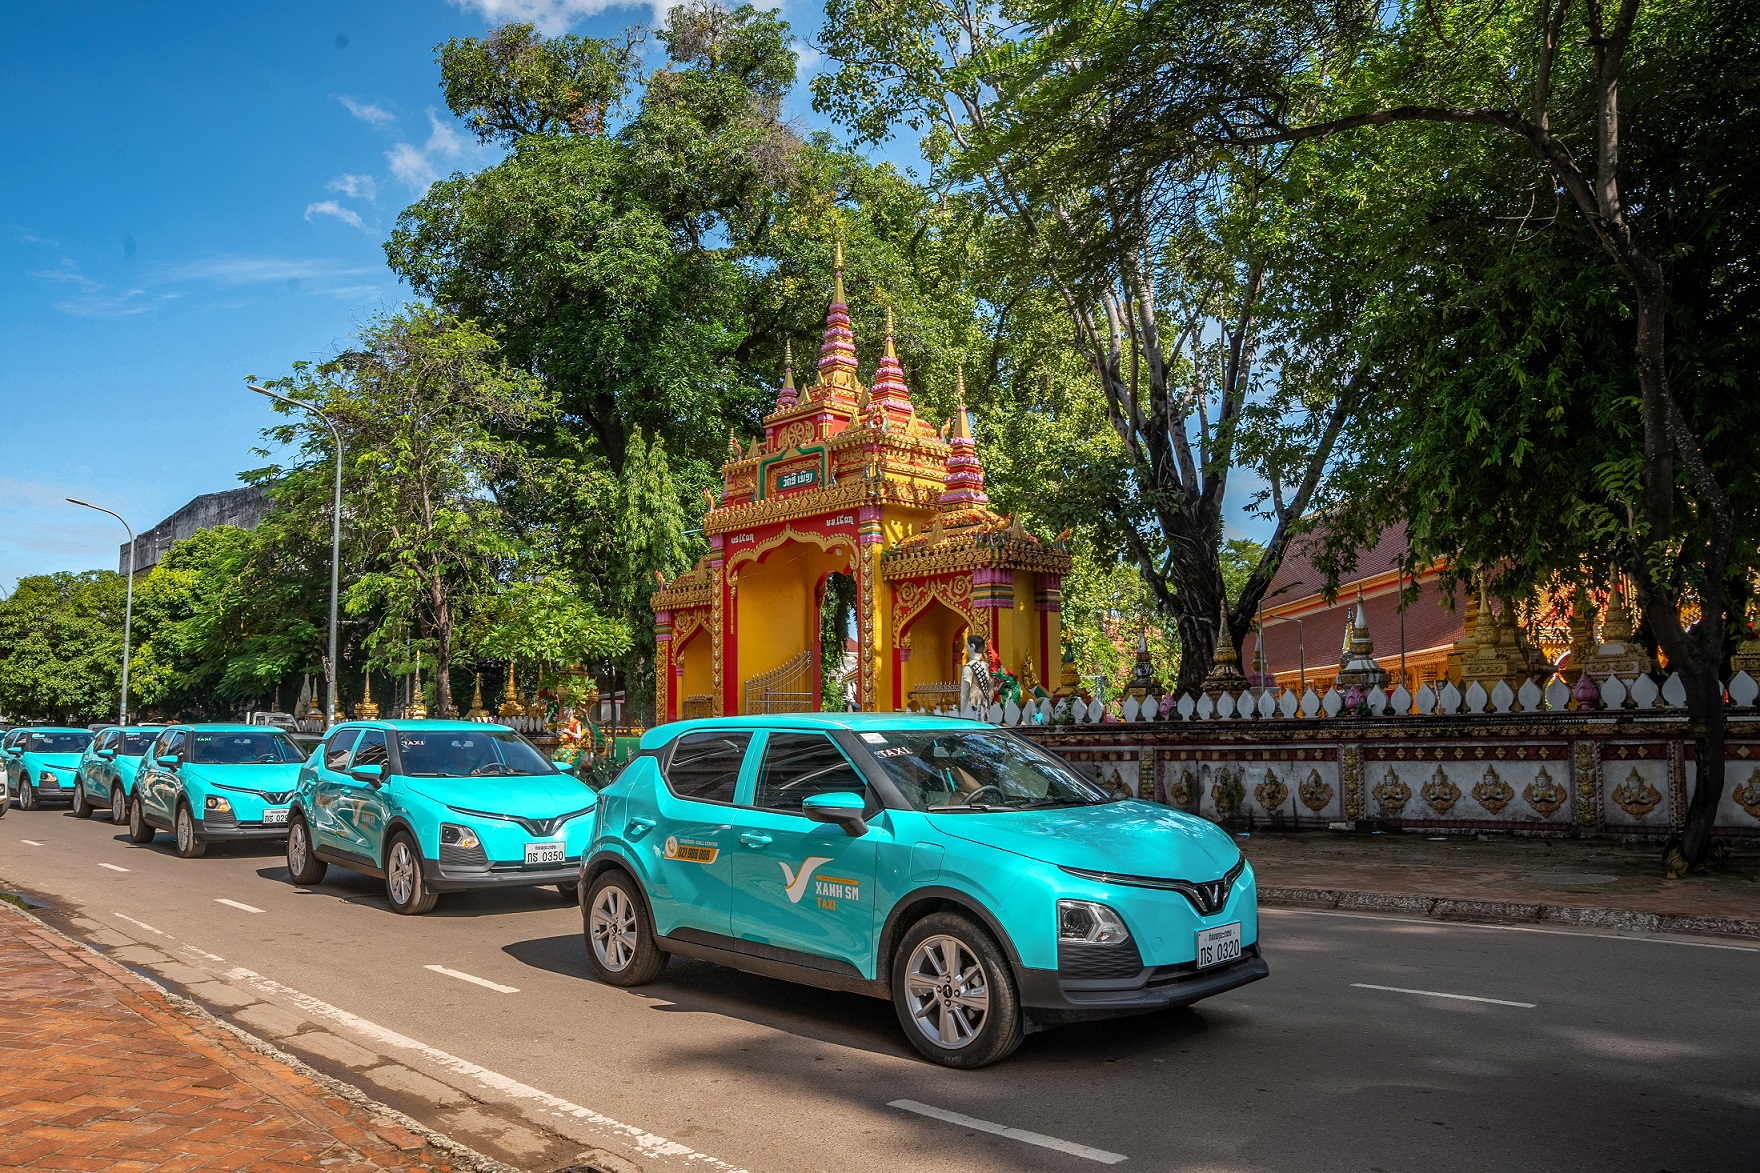 Cơ hội lớn của hãng taxi điện Xanh SM tại Lào - Ảnh 2.